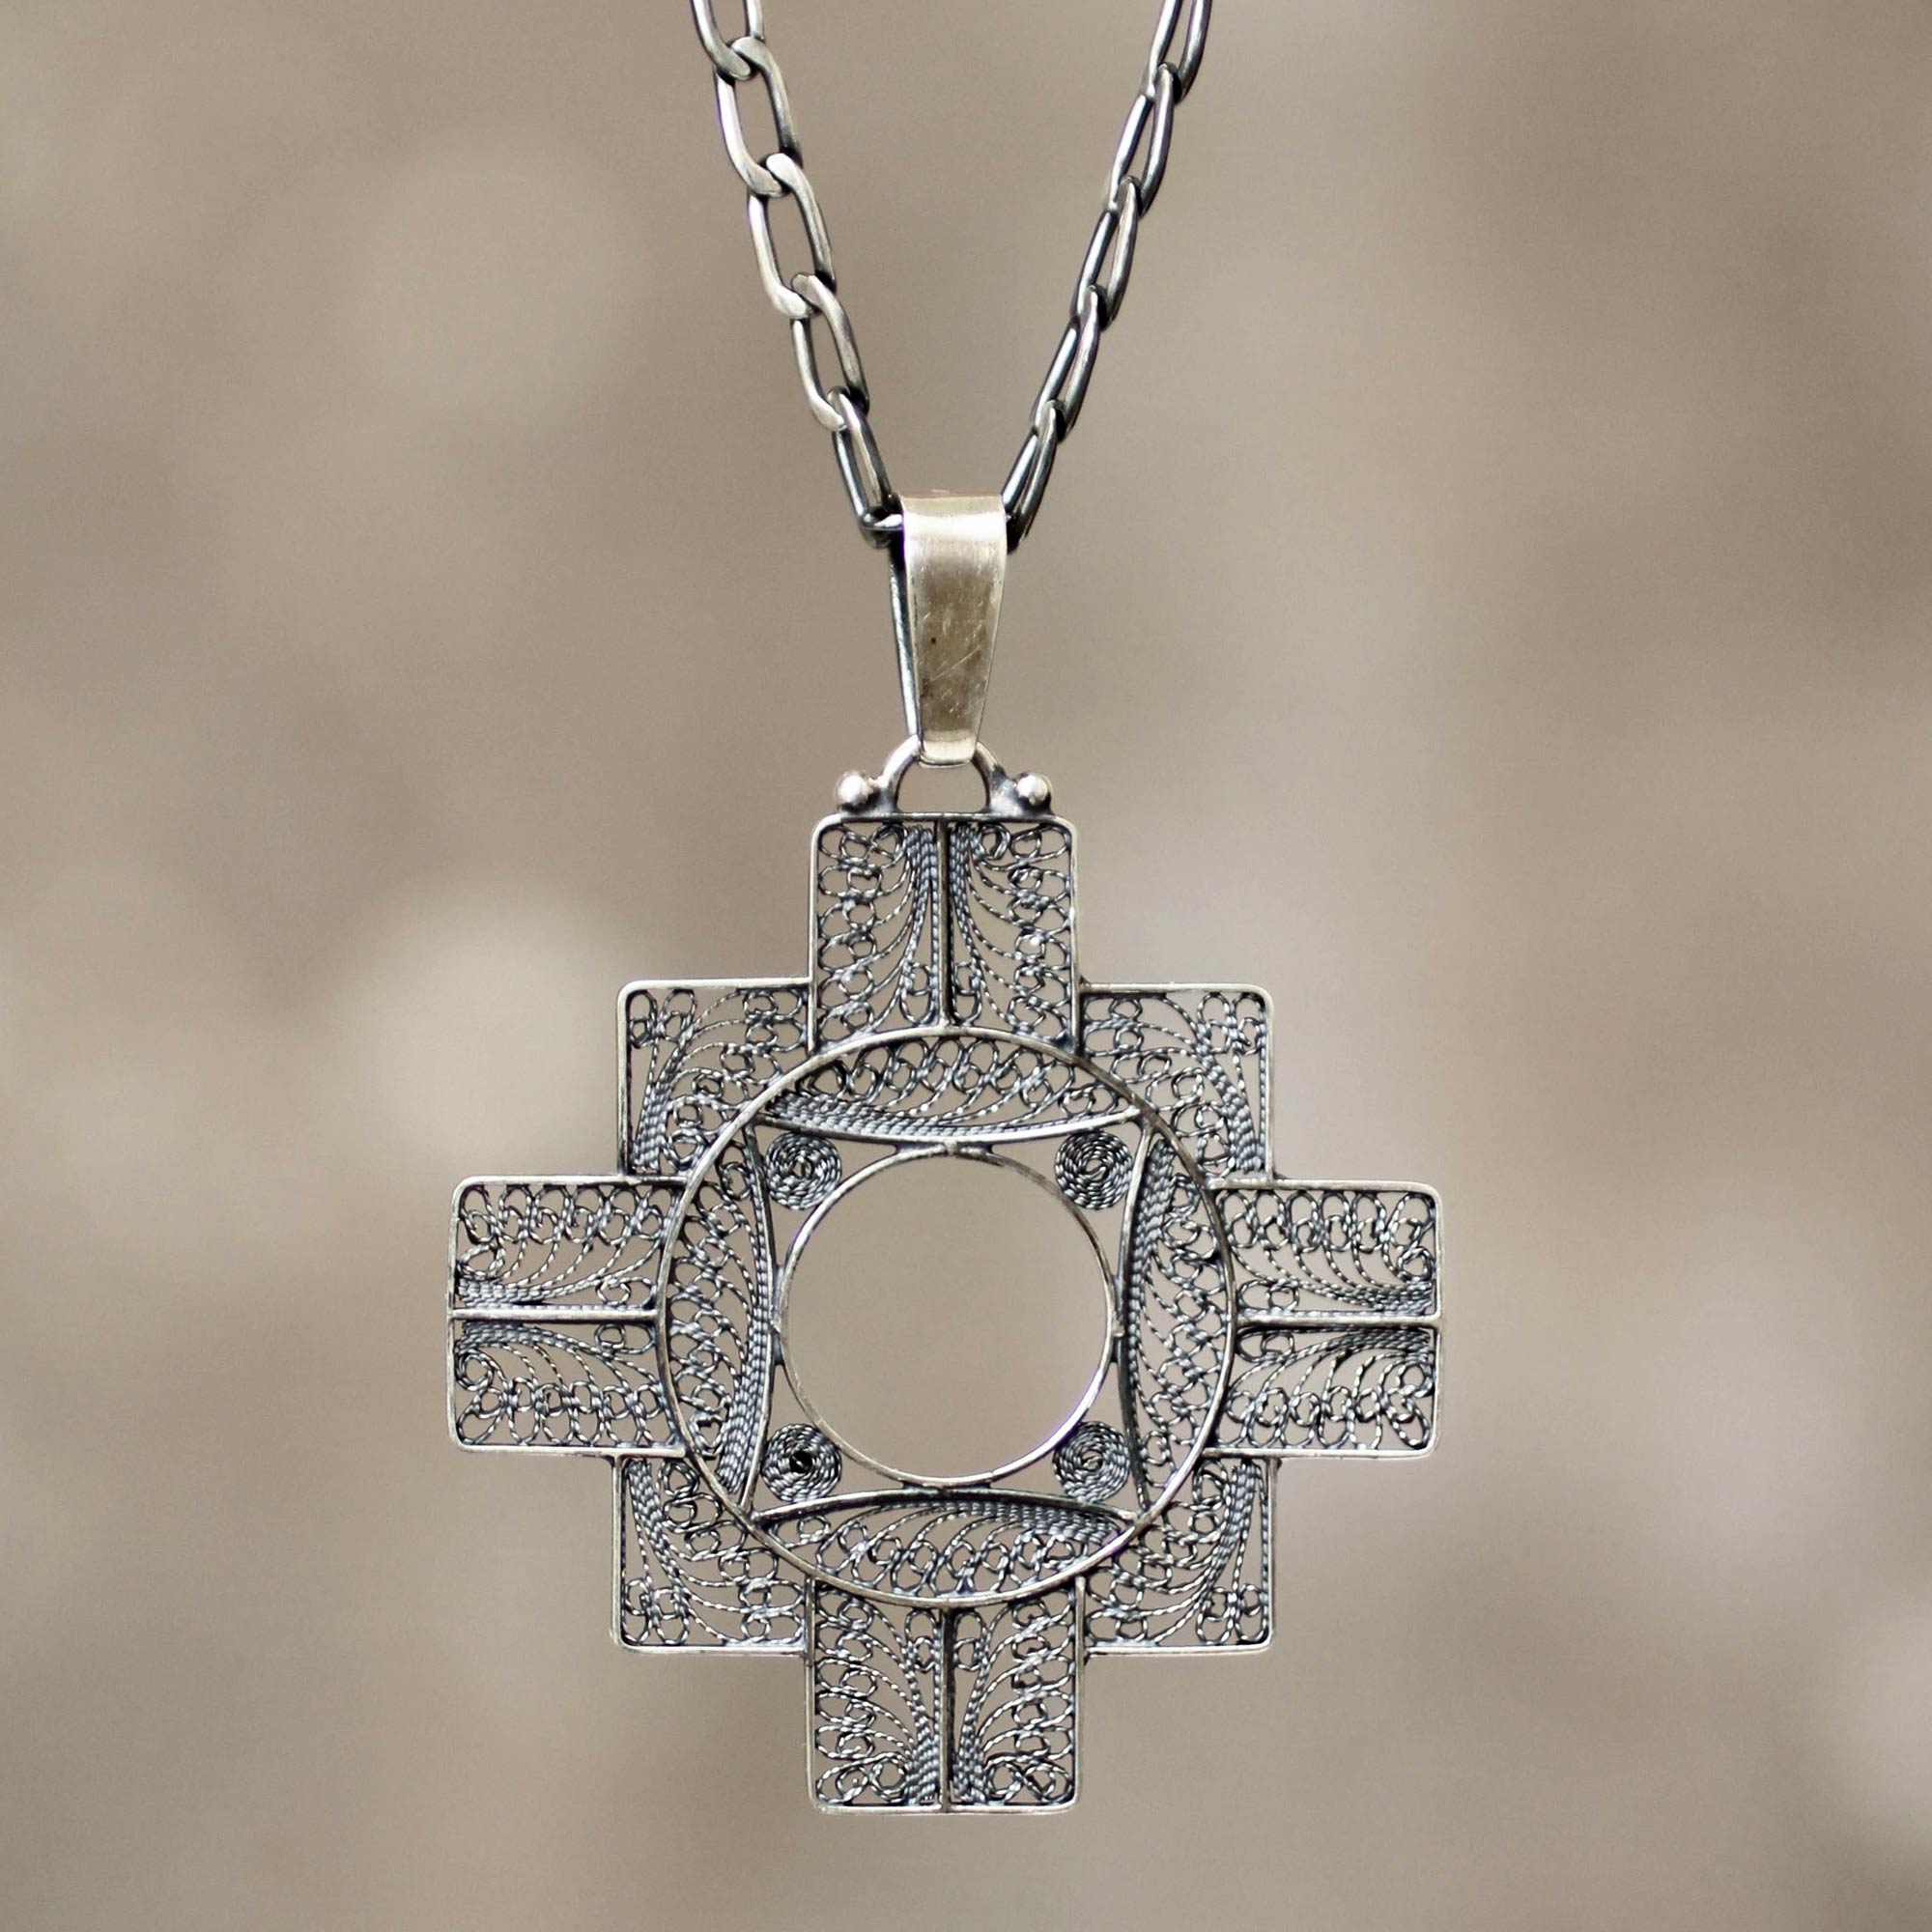 Fine Silver Filigree Pendant Necklace, "Astral Cross"